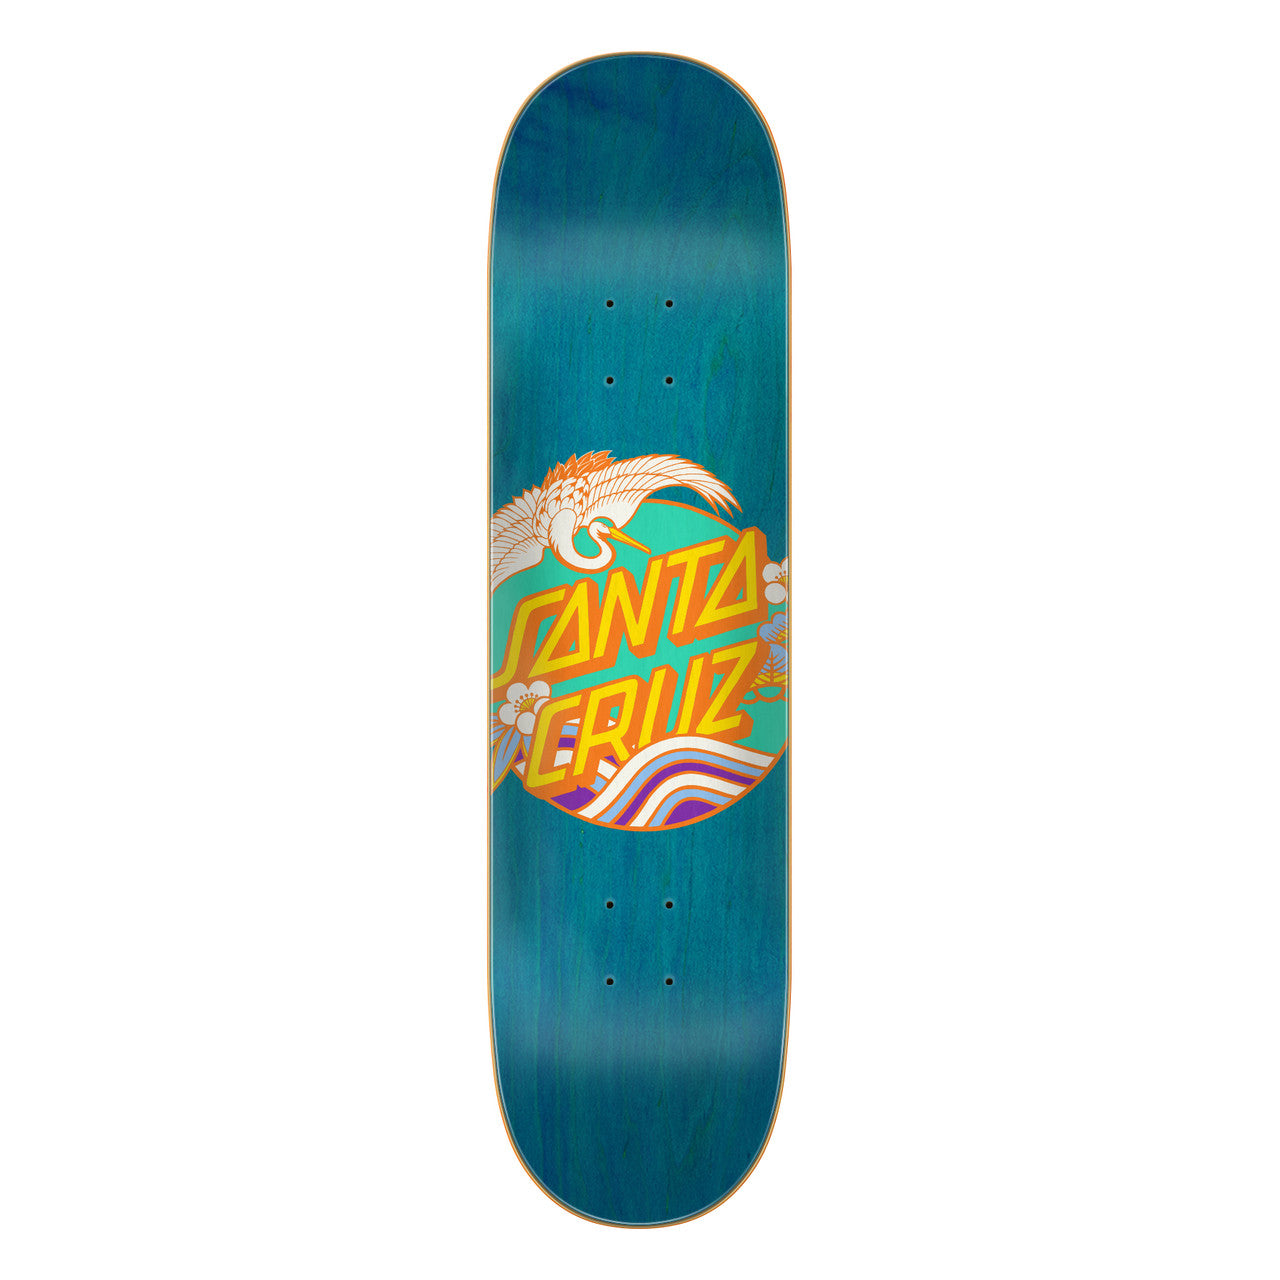 Santa Cruz Crane Dot Skateboard Deck 8.0"